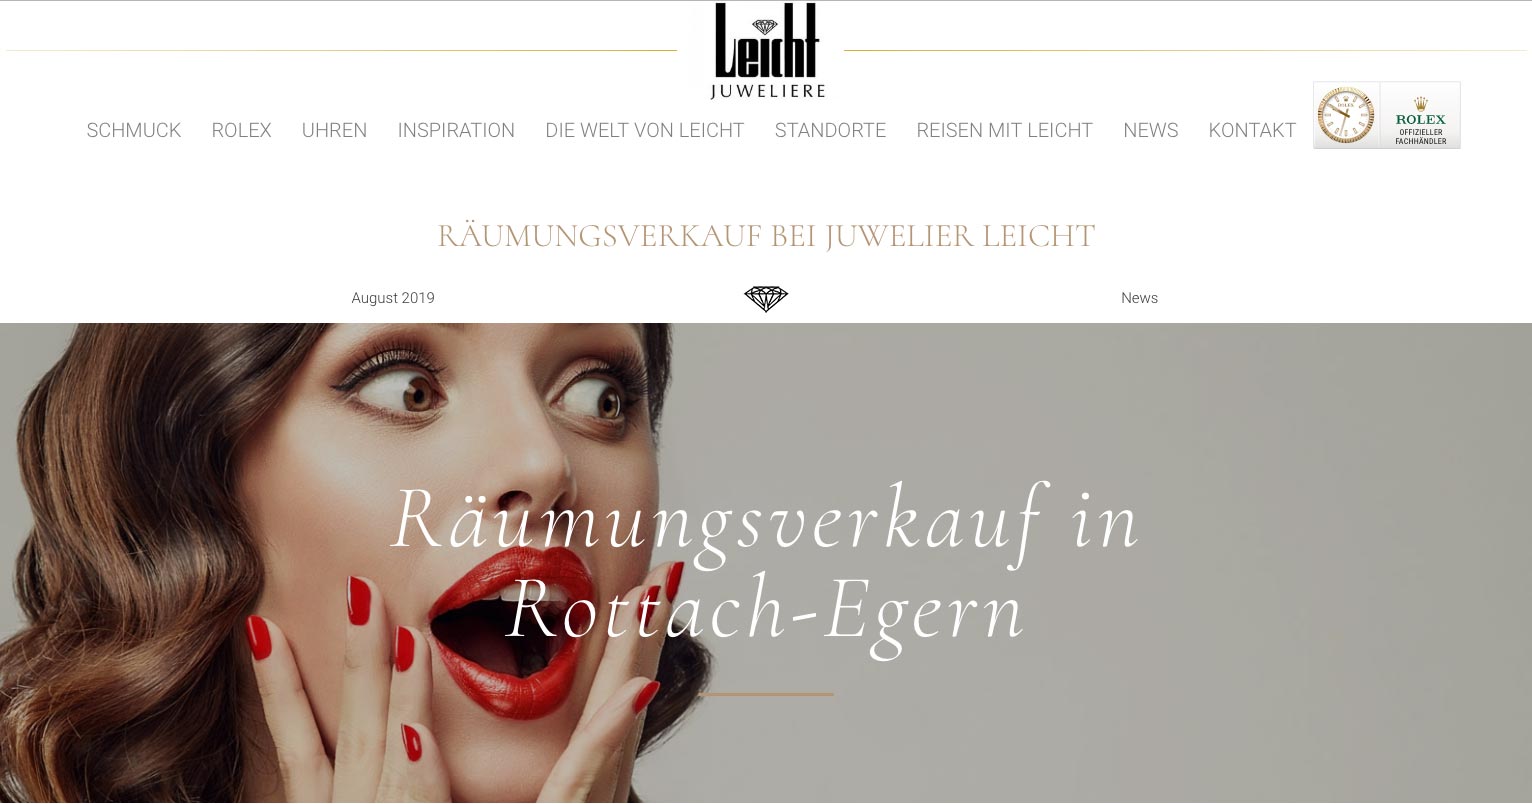 Am 6. September beginnt der Räumungsverkauf bei Juwelier Leicht in Rottach-Egern.